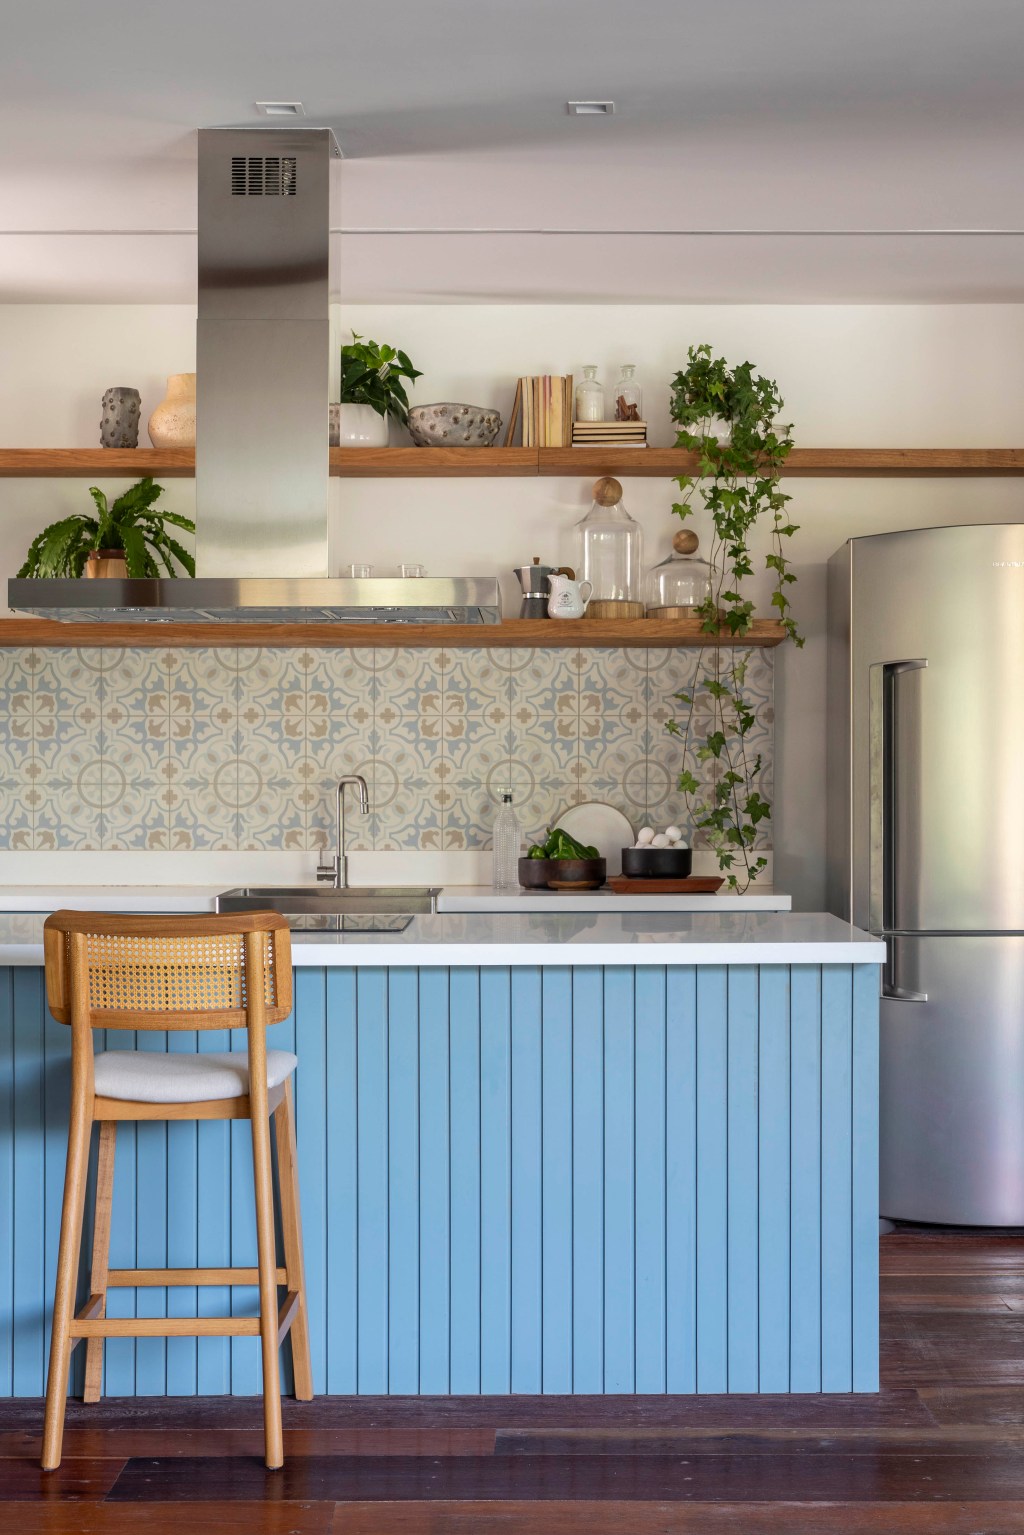 Casa de campo de 800 m² em Petrópolis ganha décor com cara de montanha. Projeto de João Panaggio. Na foto, cozinha com ilha azul e azulejos retro.